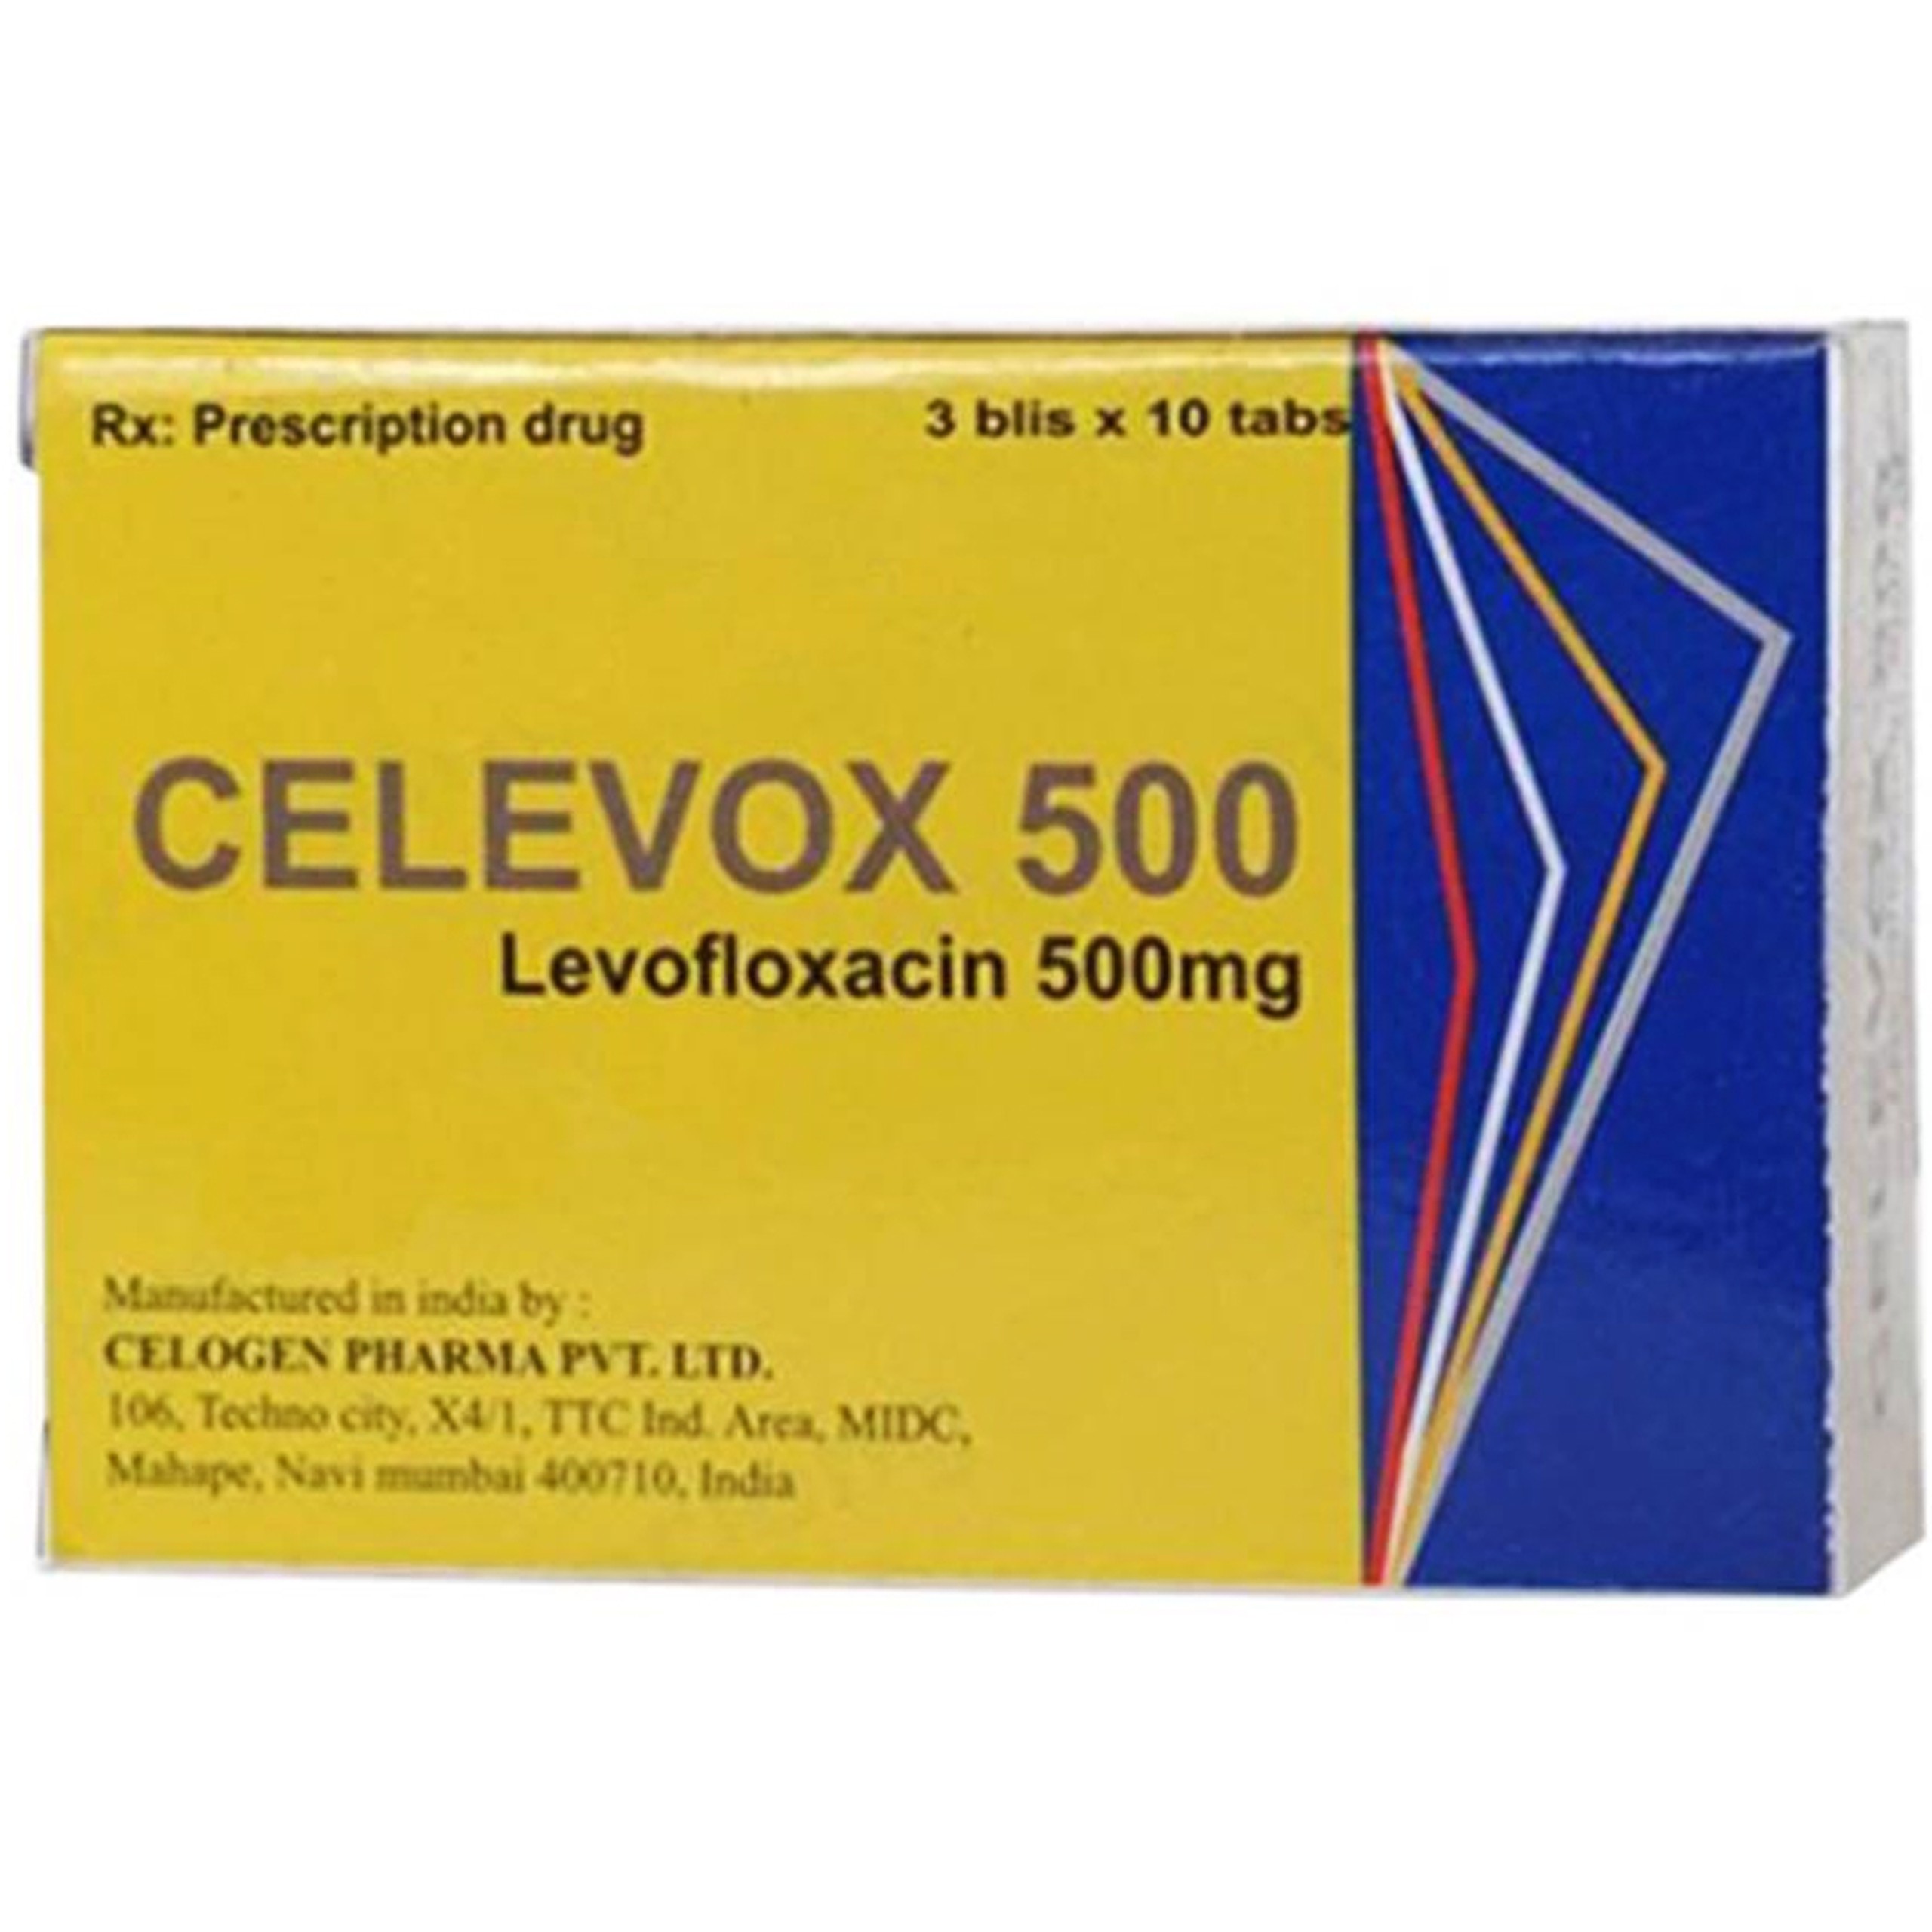 Thuốc Celevox 500 Celogen Pharma điều trị viêm xoang cấp, viêm phế quản mãn (3 vỉ x 10 viên)